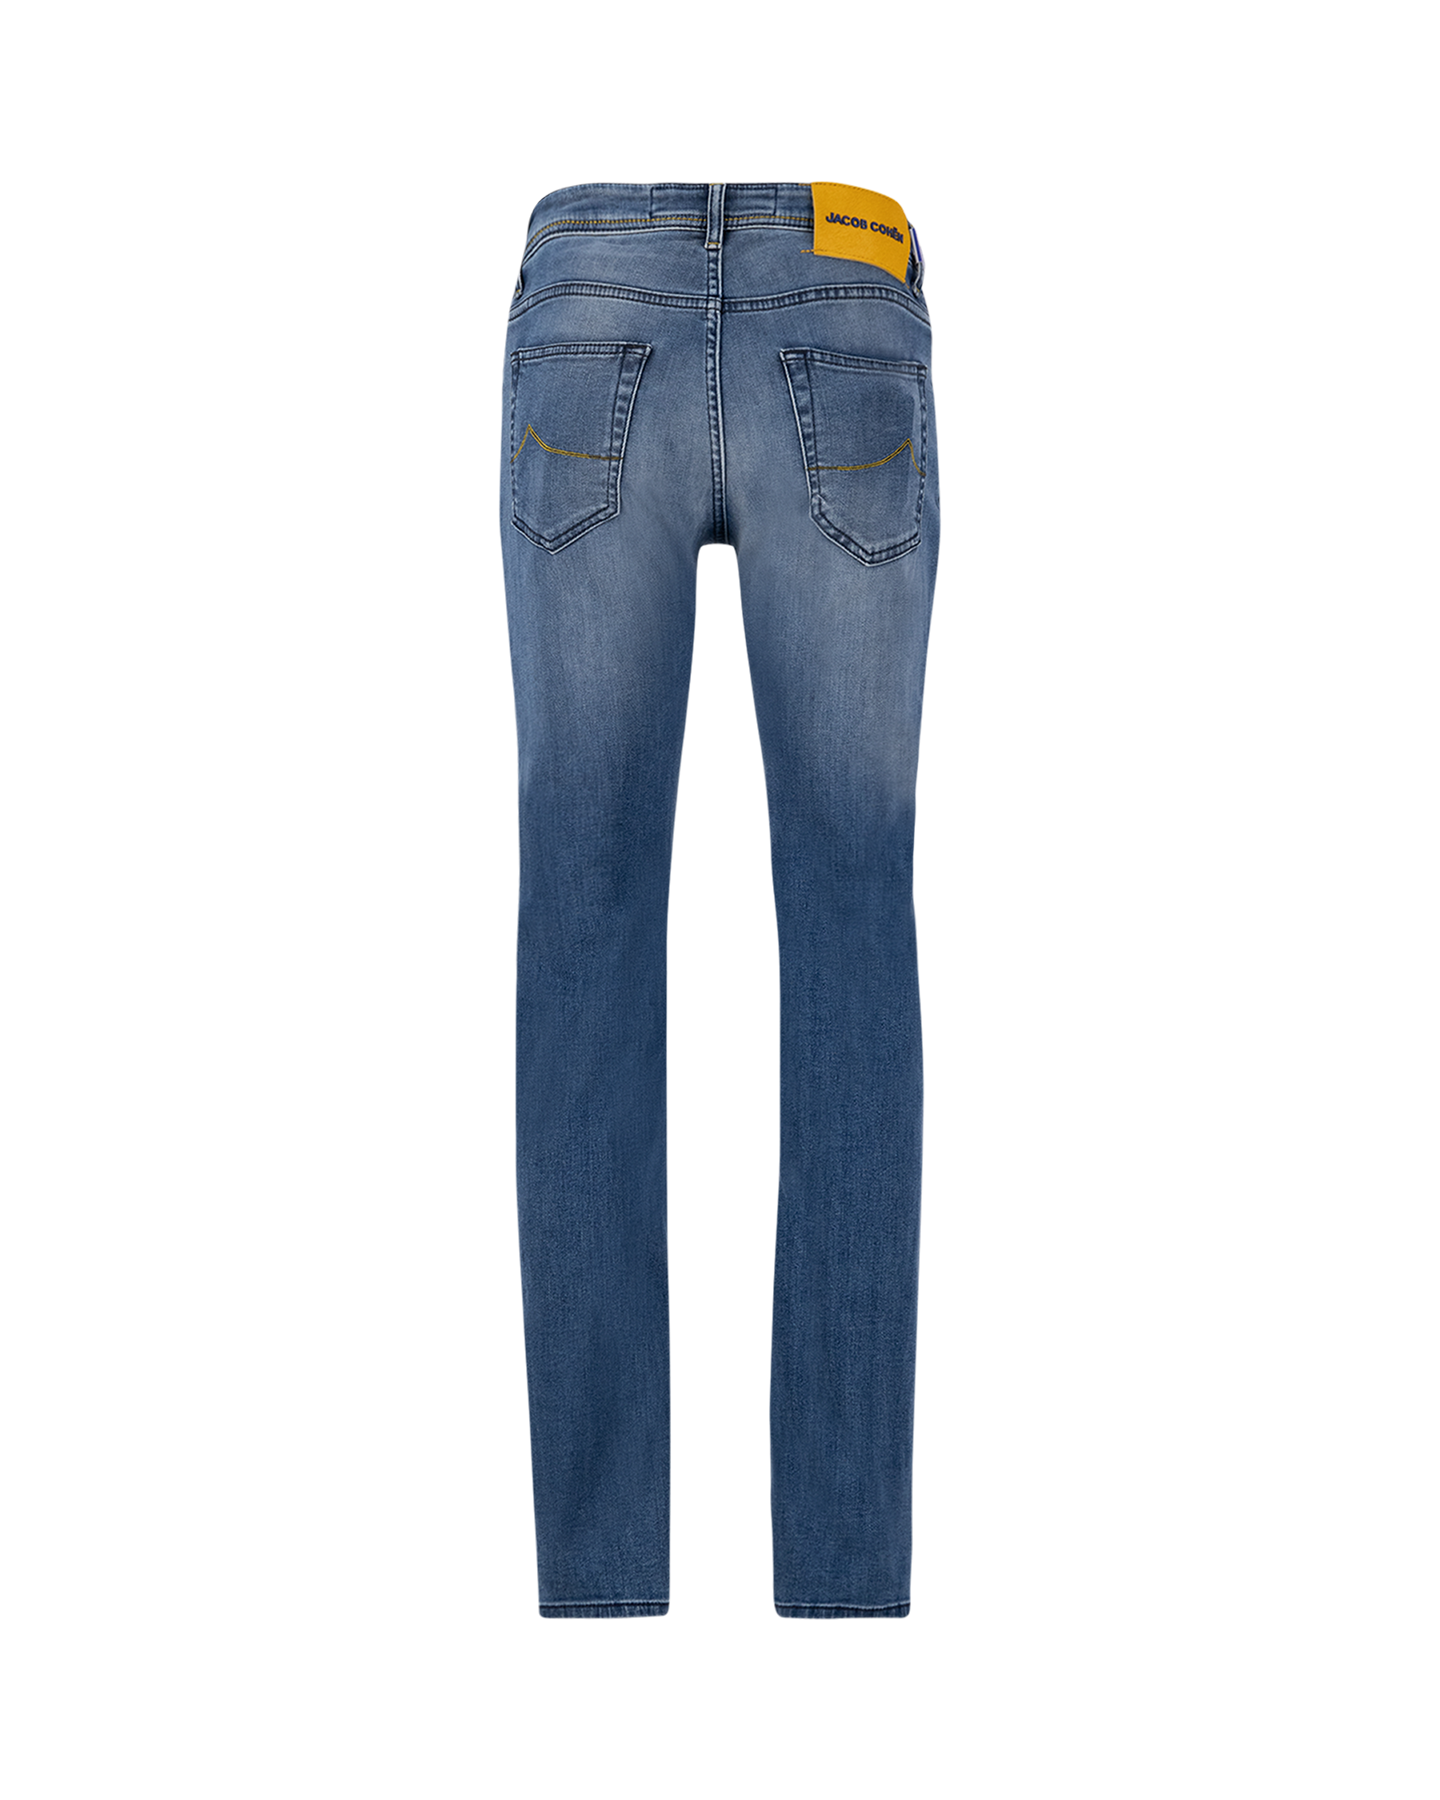 Jacob Cohen Nick Slim Mid-Light Blue Jeans 698D DENIM 2